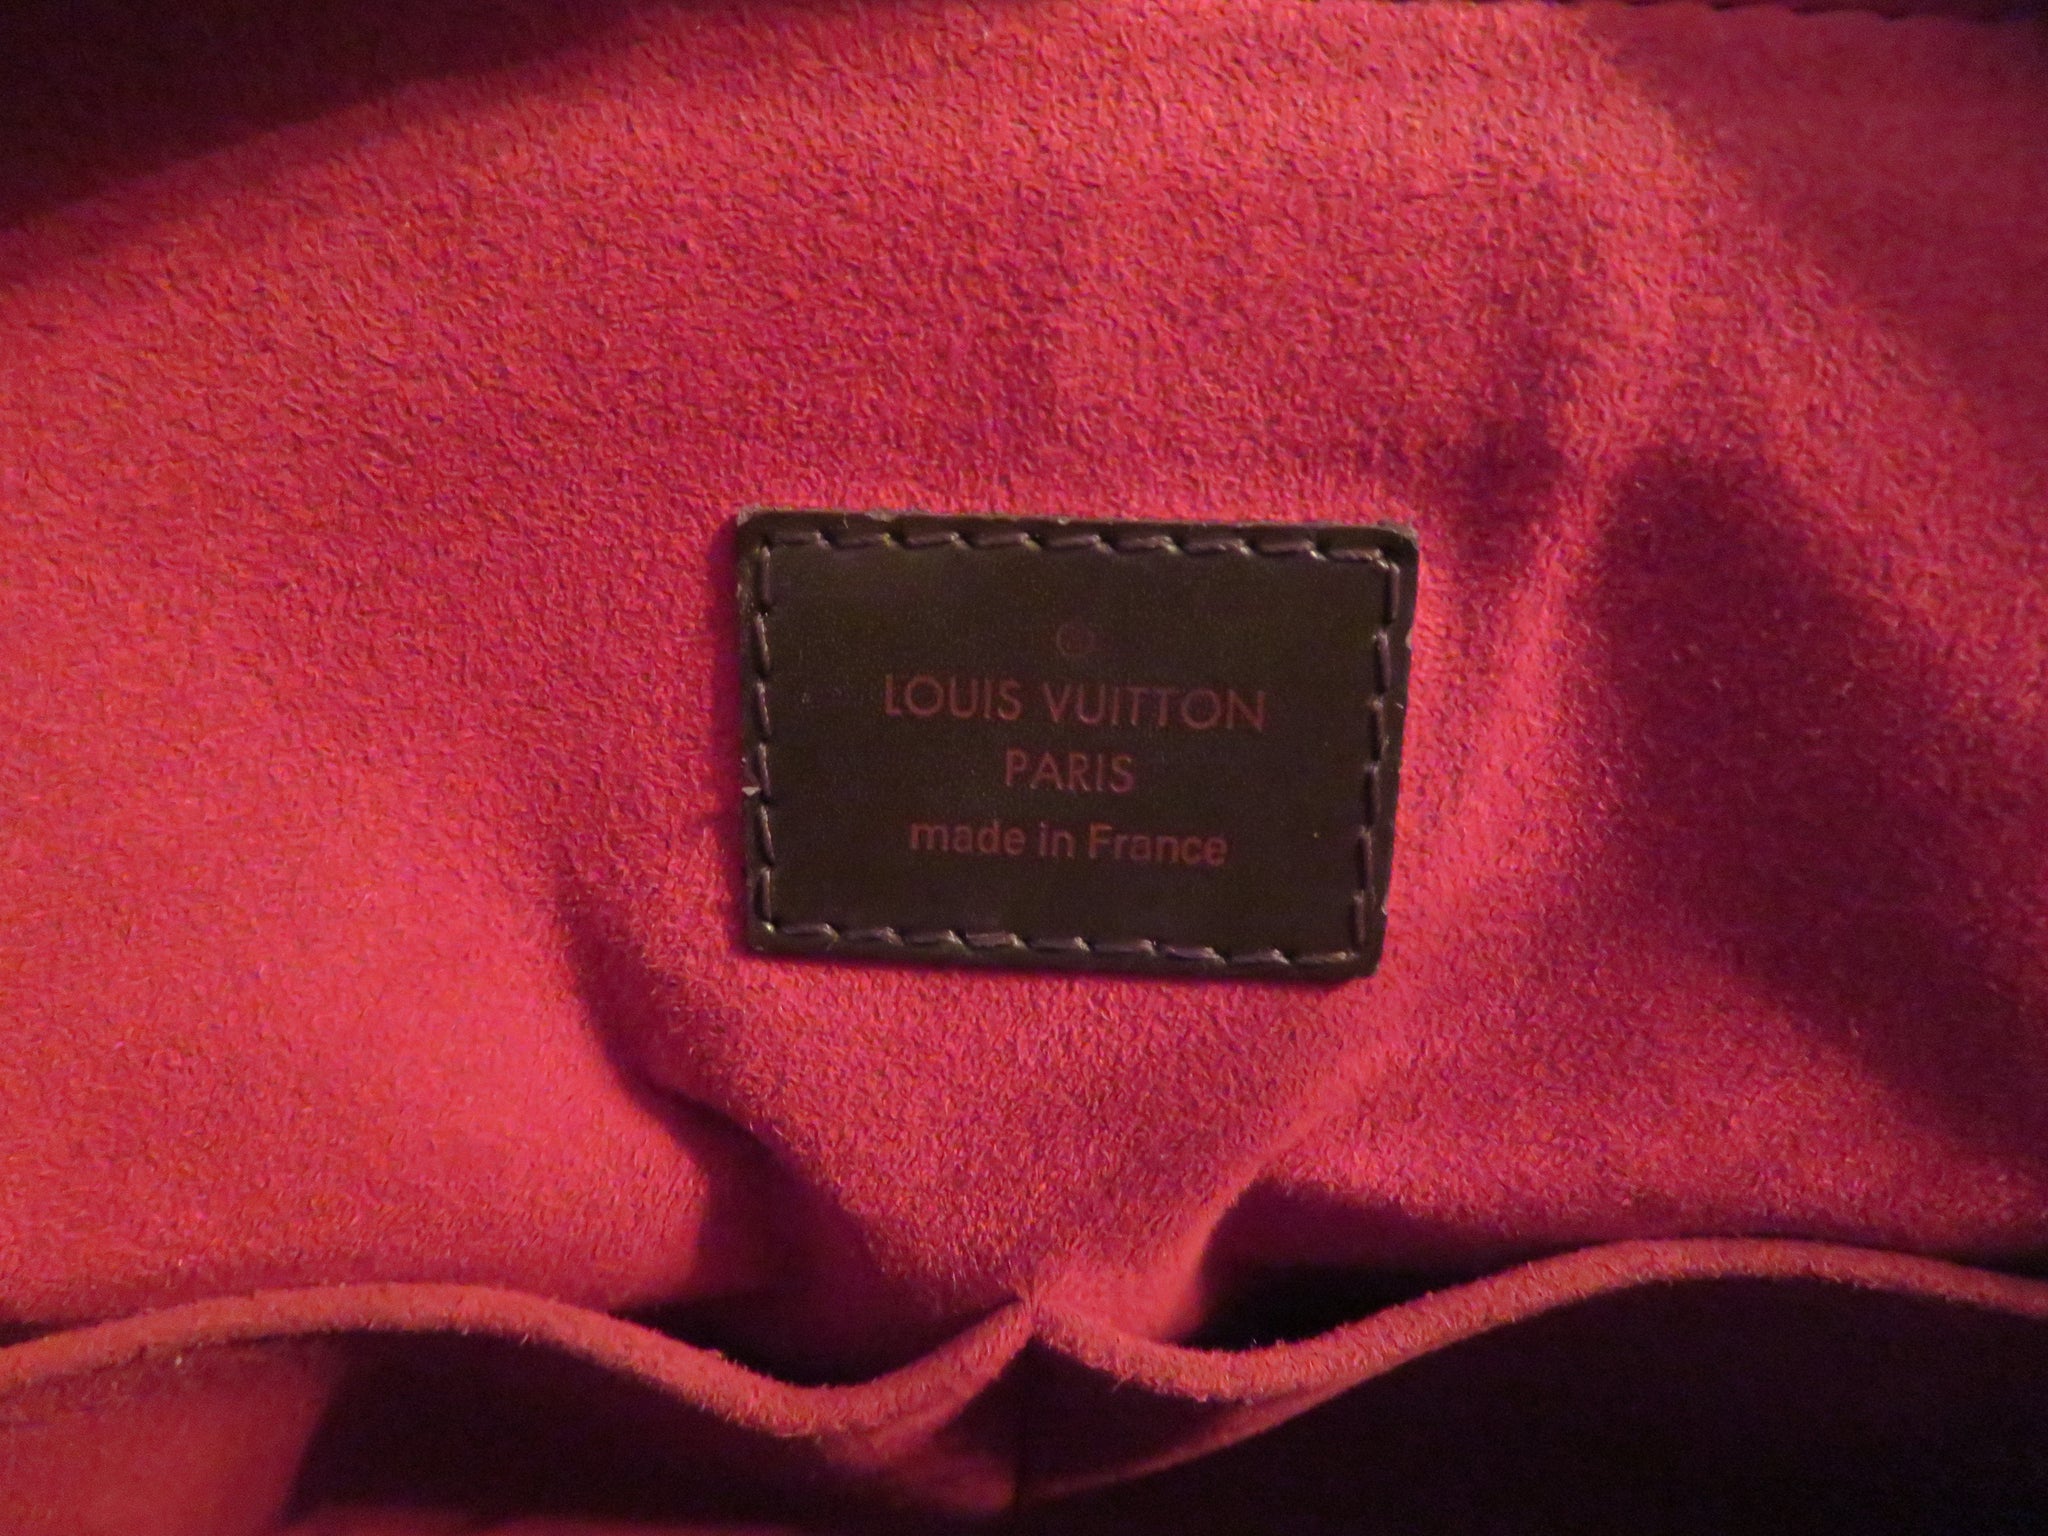 AUTHENTIC Louis Vuitton Passy PM PREOWNED (WBA019) – Jj's Closet, LLC